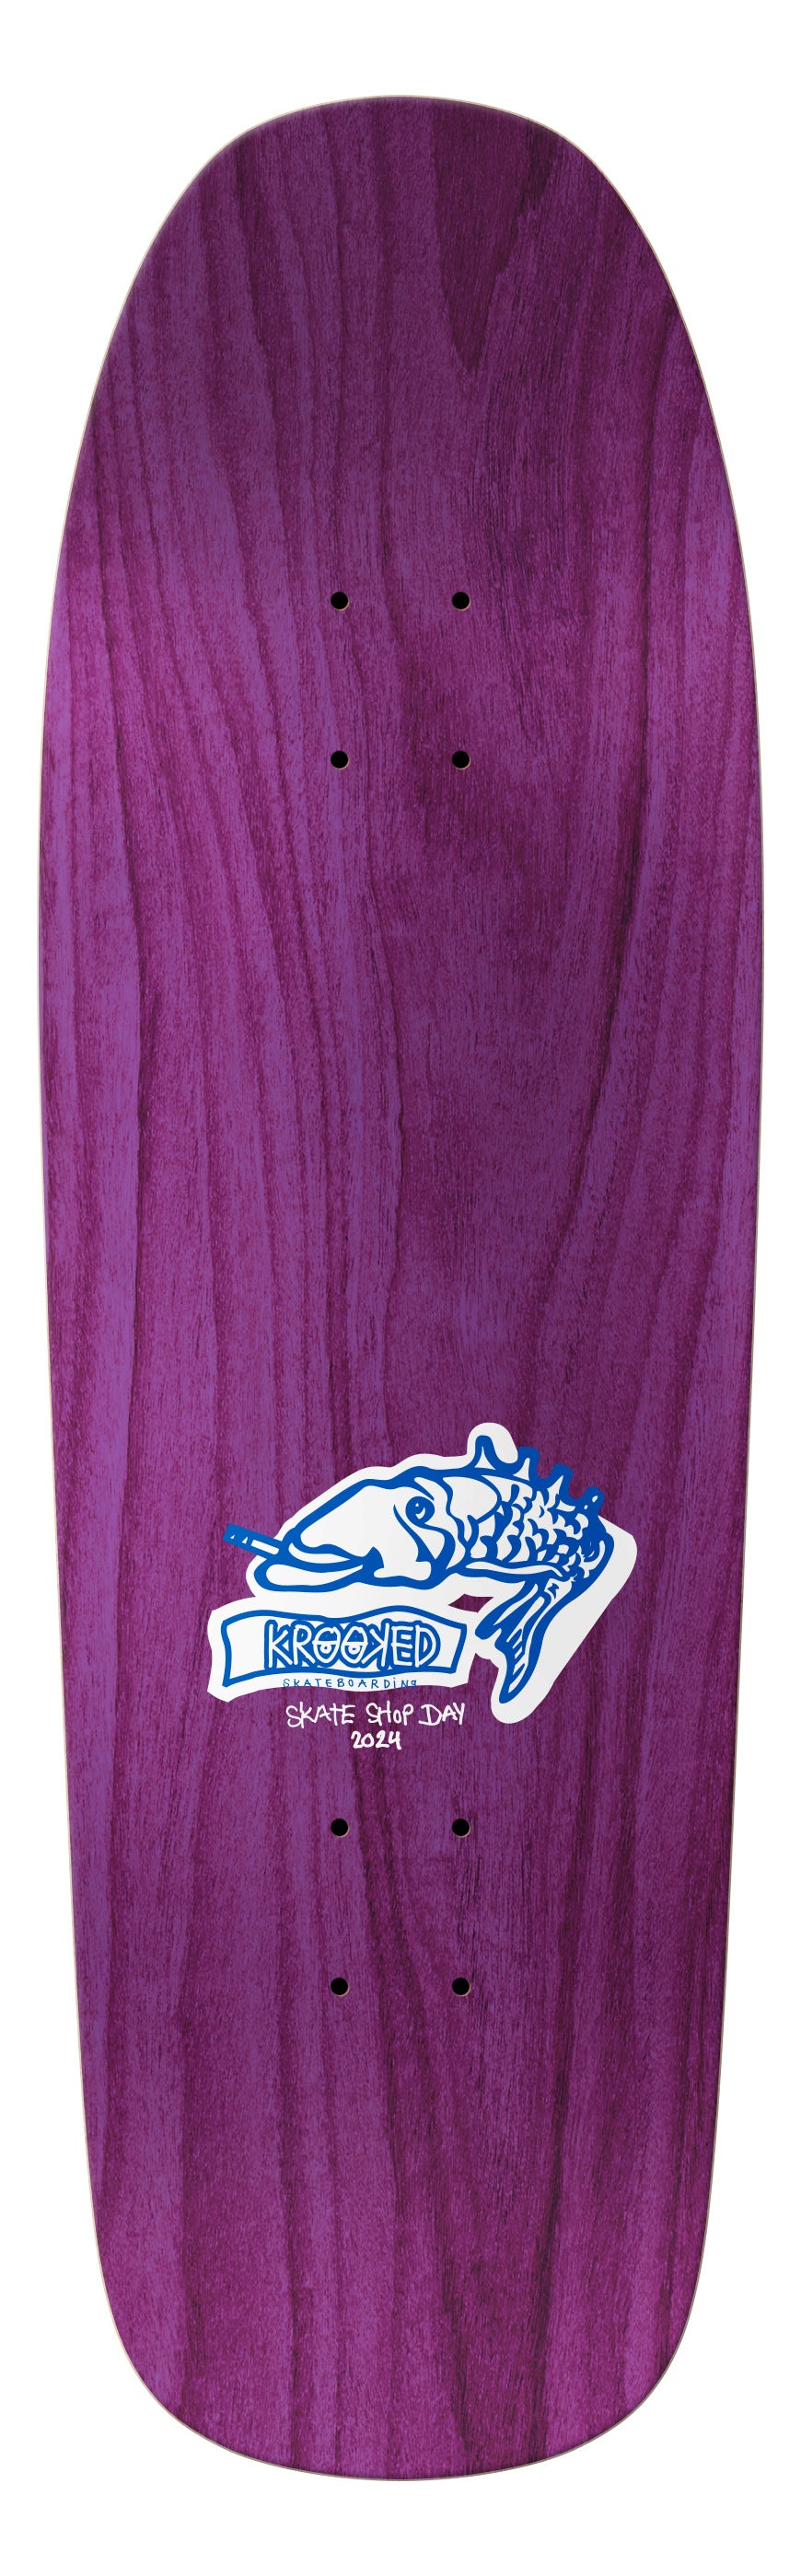 Krooked Gonz Color My Friends 9.81 LTD Skateboard Deck blind bag